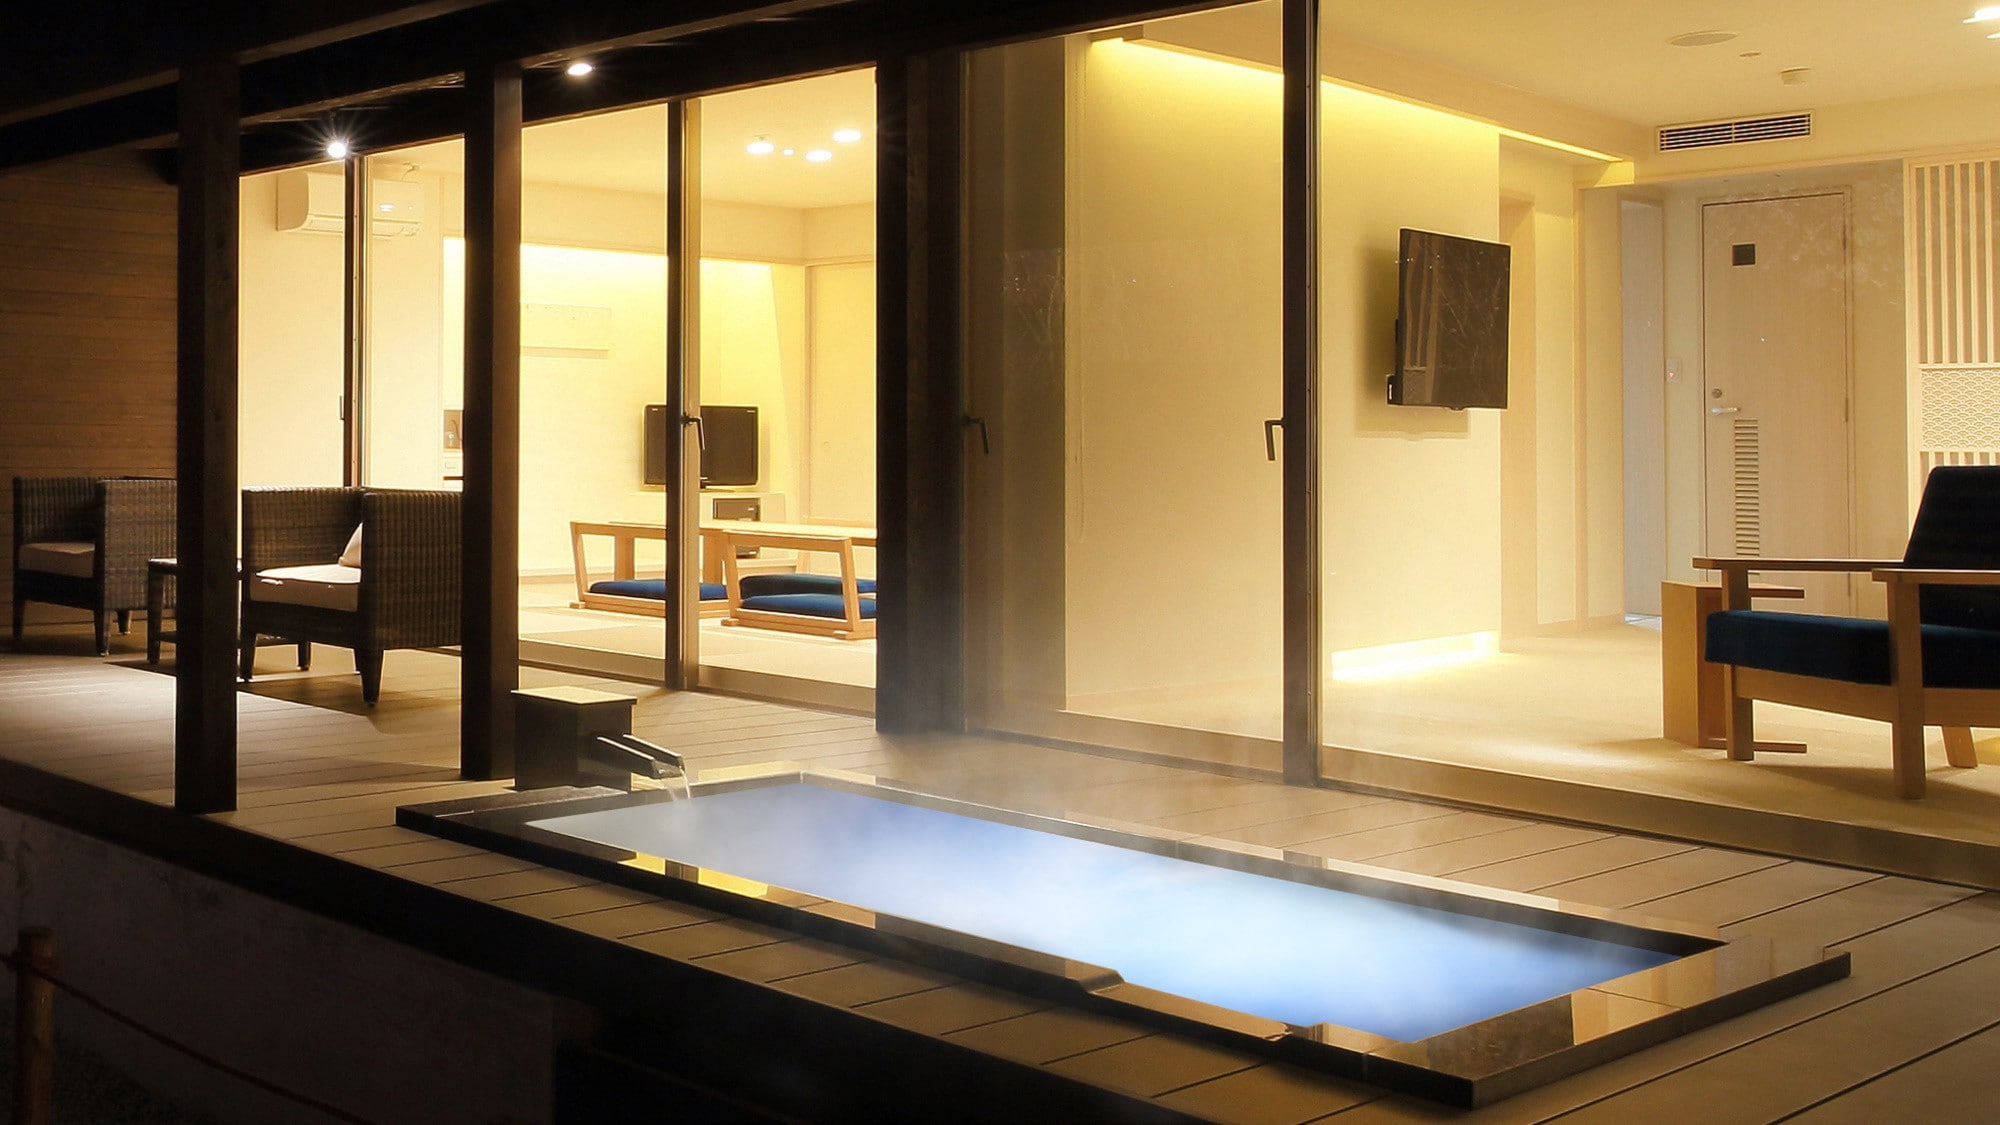 “Seika-Seika-” 從露天浴池看到的房間。帶著夢幻般的光芒